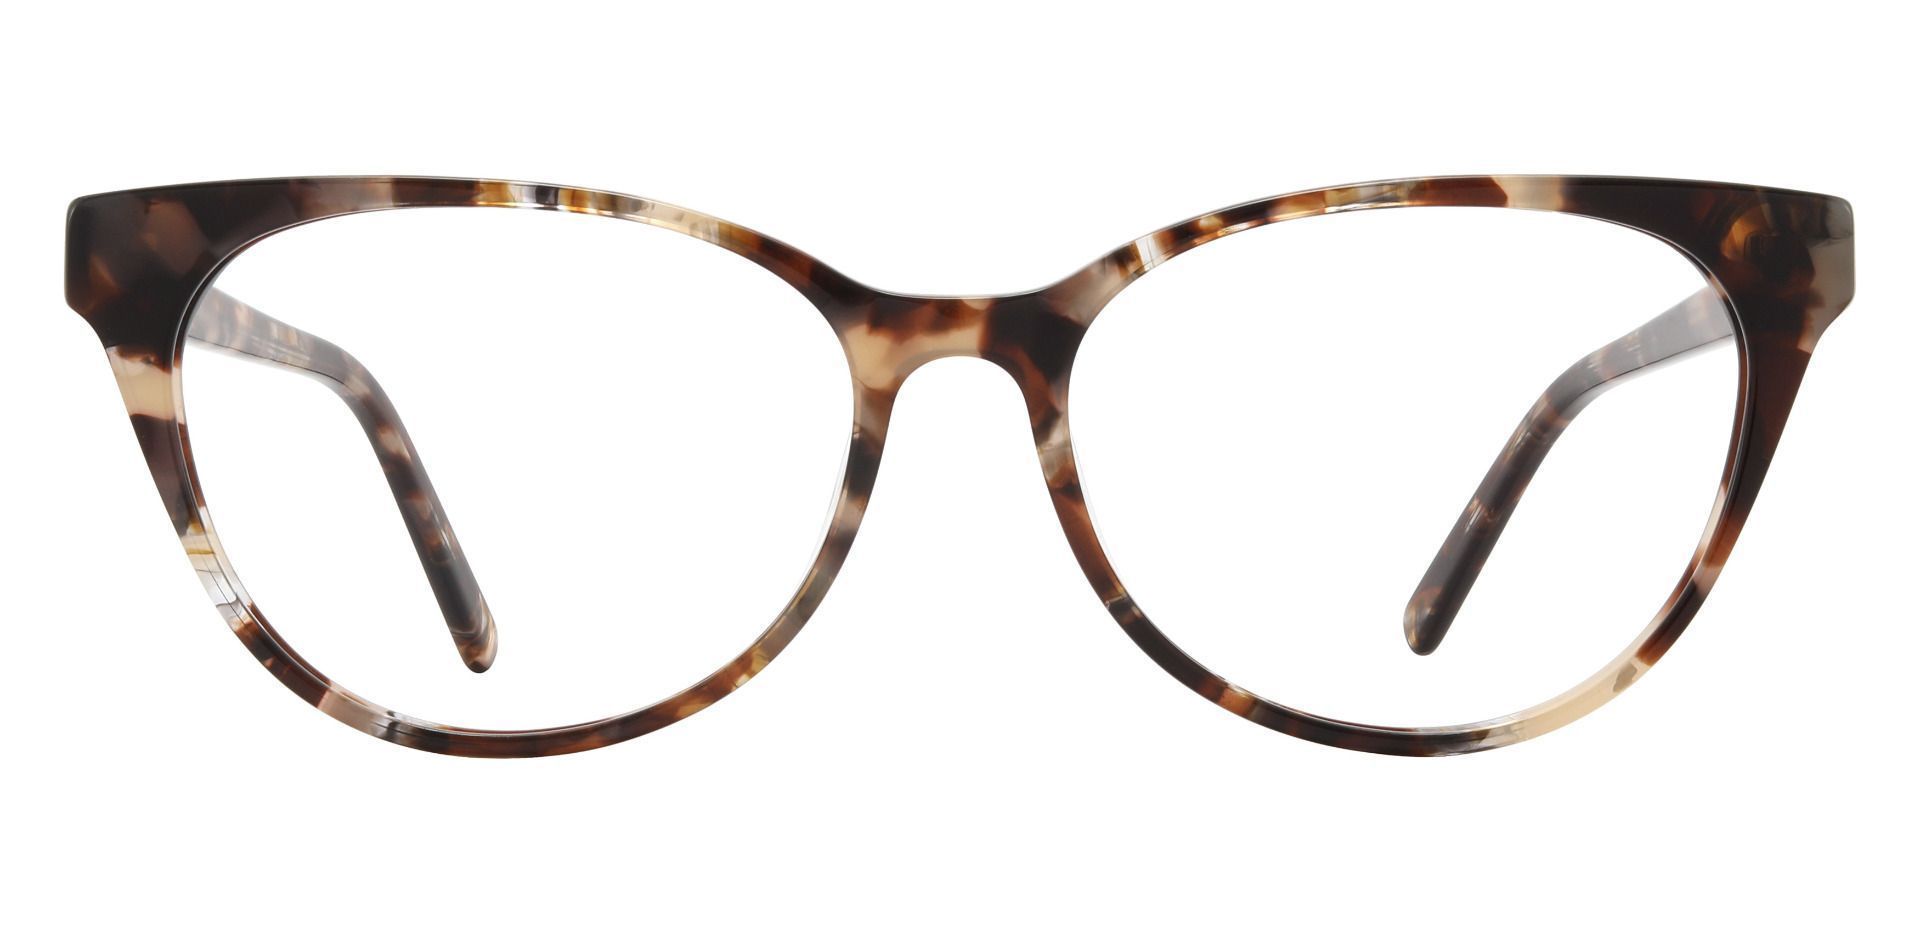 Dolly Cat Eye Prescription Glasses - Tortoise | Women's Eyeglasses ...